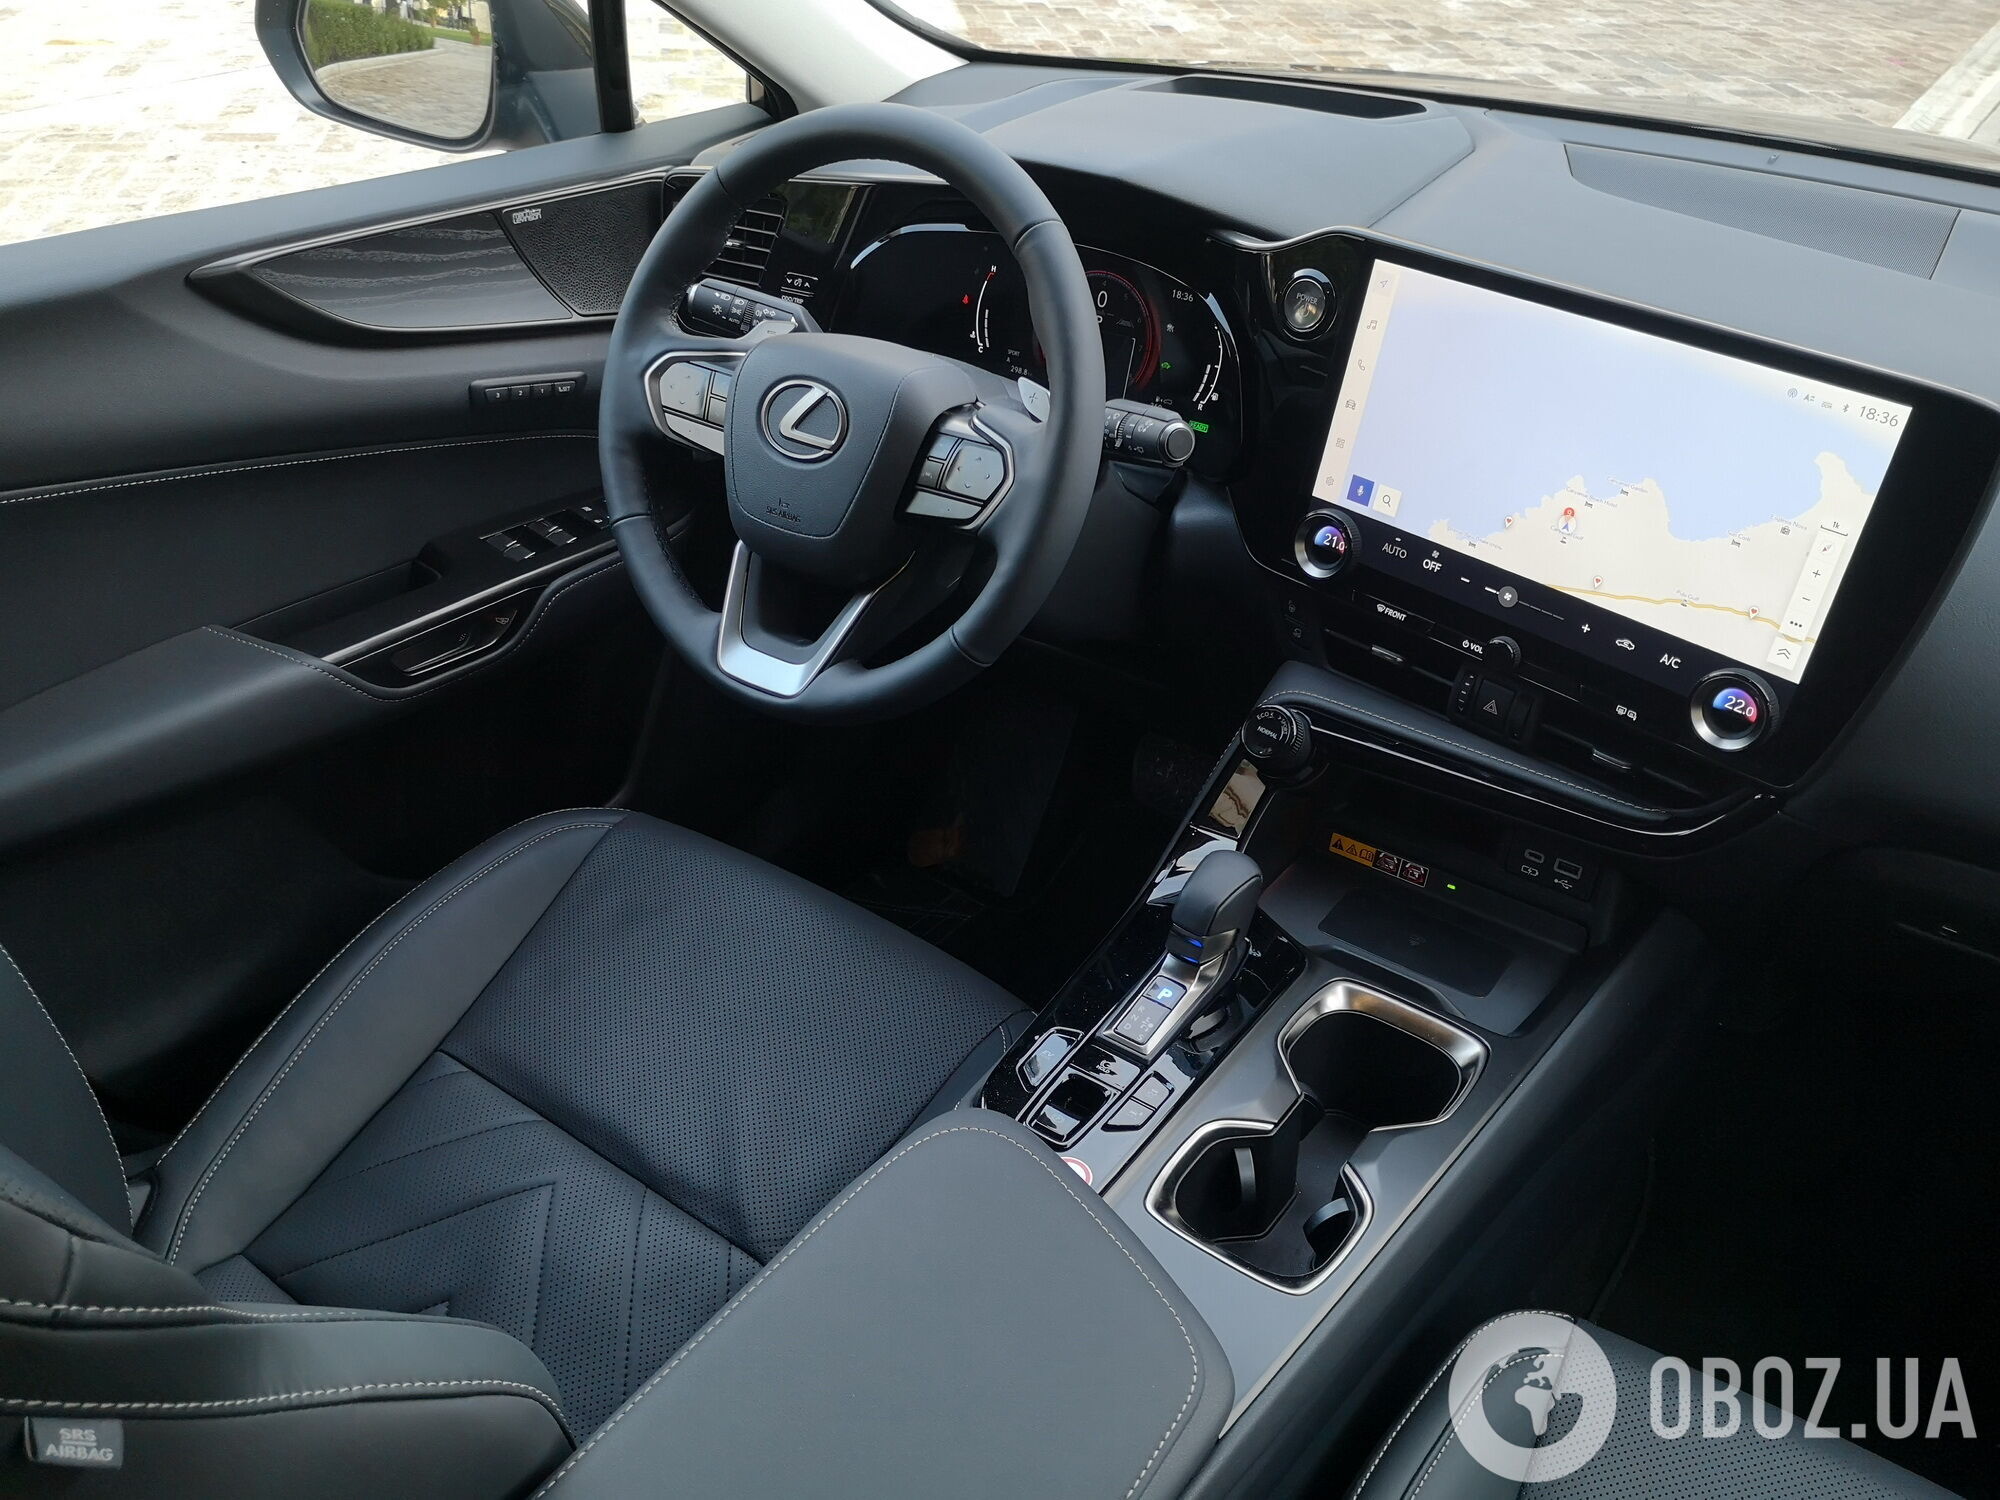 Во втором поколении Lexus NX стал гораздо более удобным и функциональным